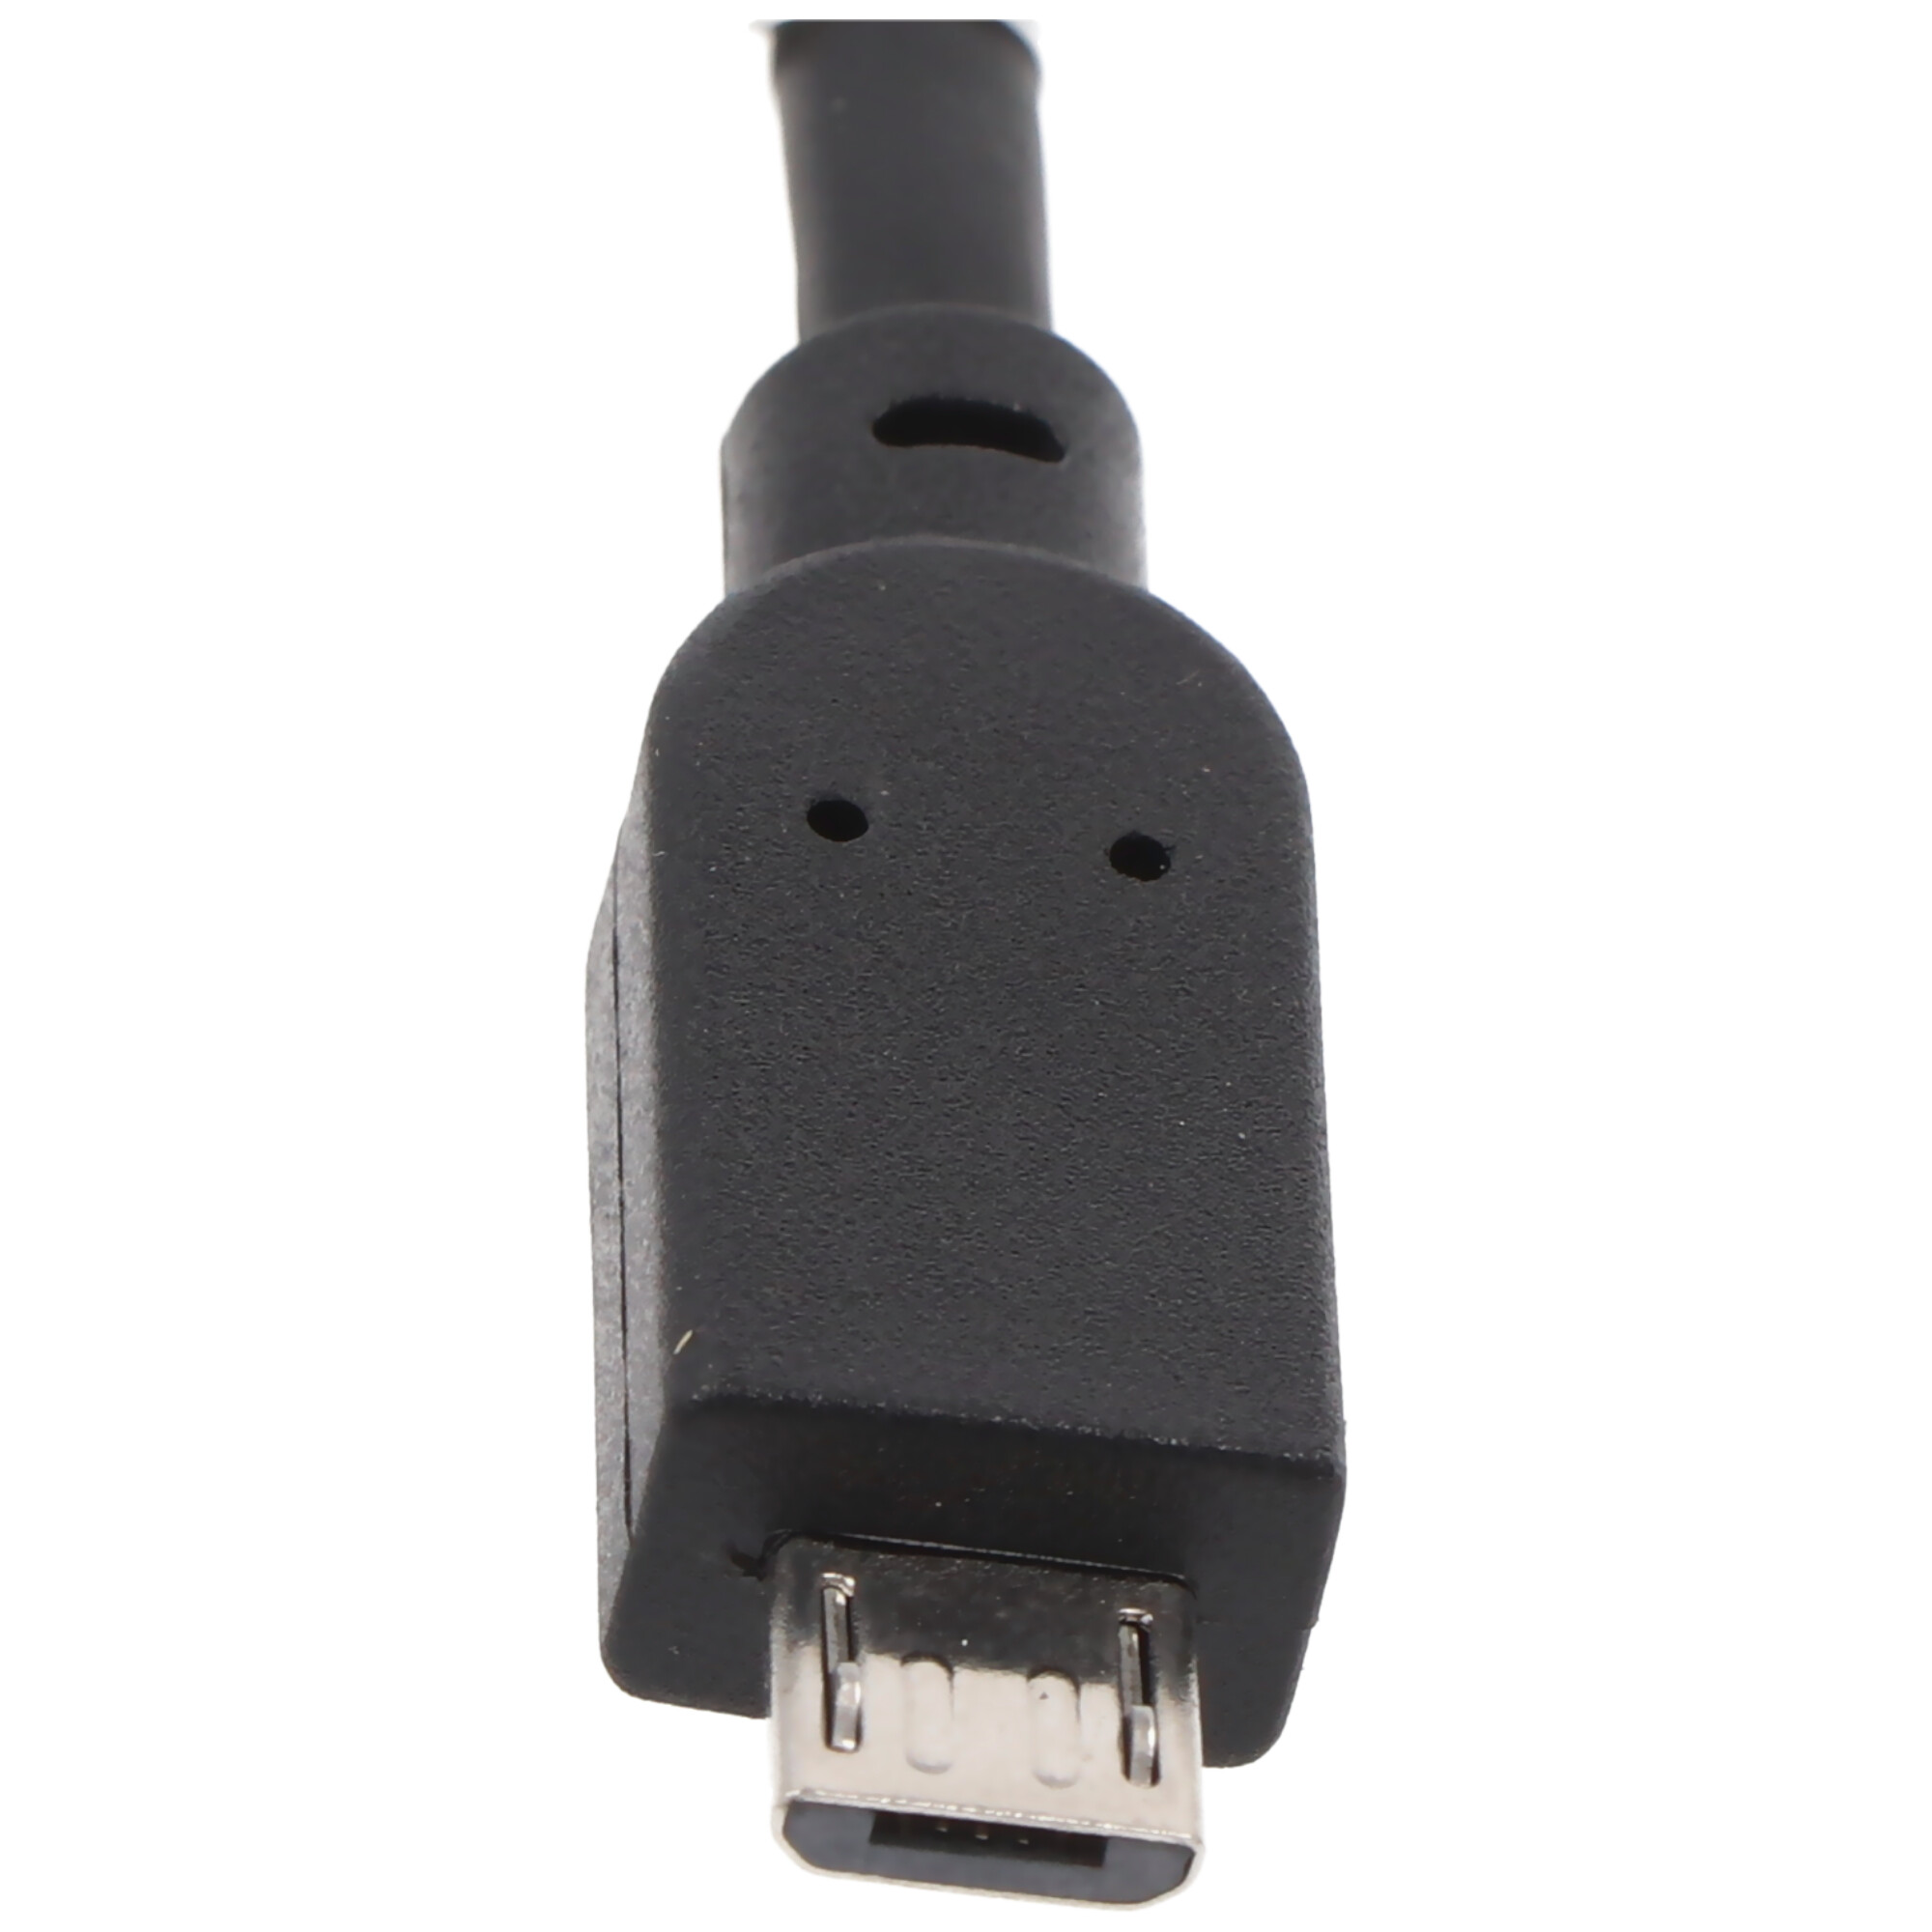 USB 2.0 Hi-Speed Kabel A Stecker auf micro B Stecker, 15cm